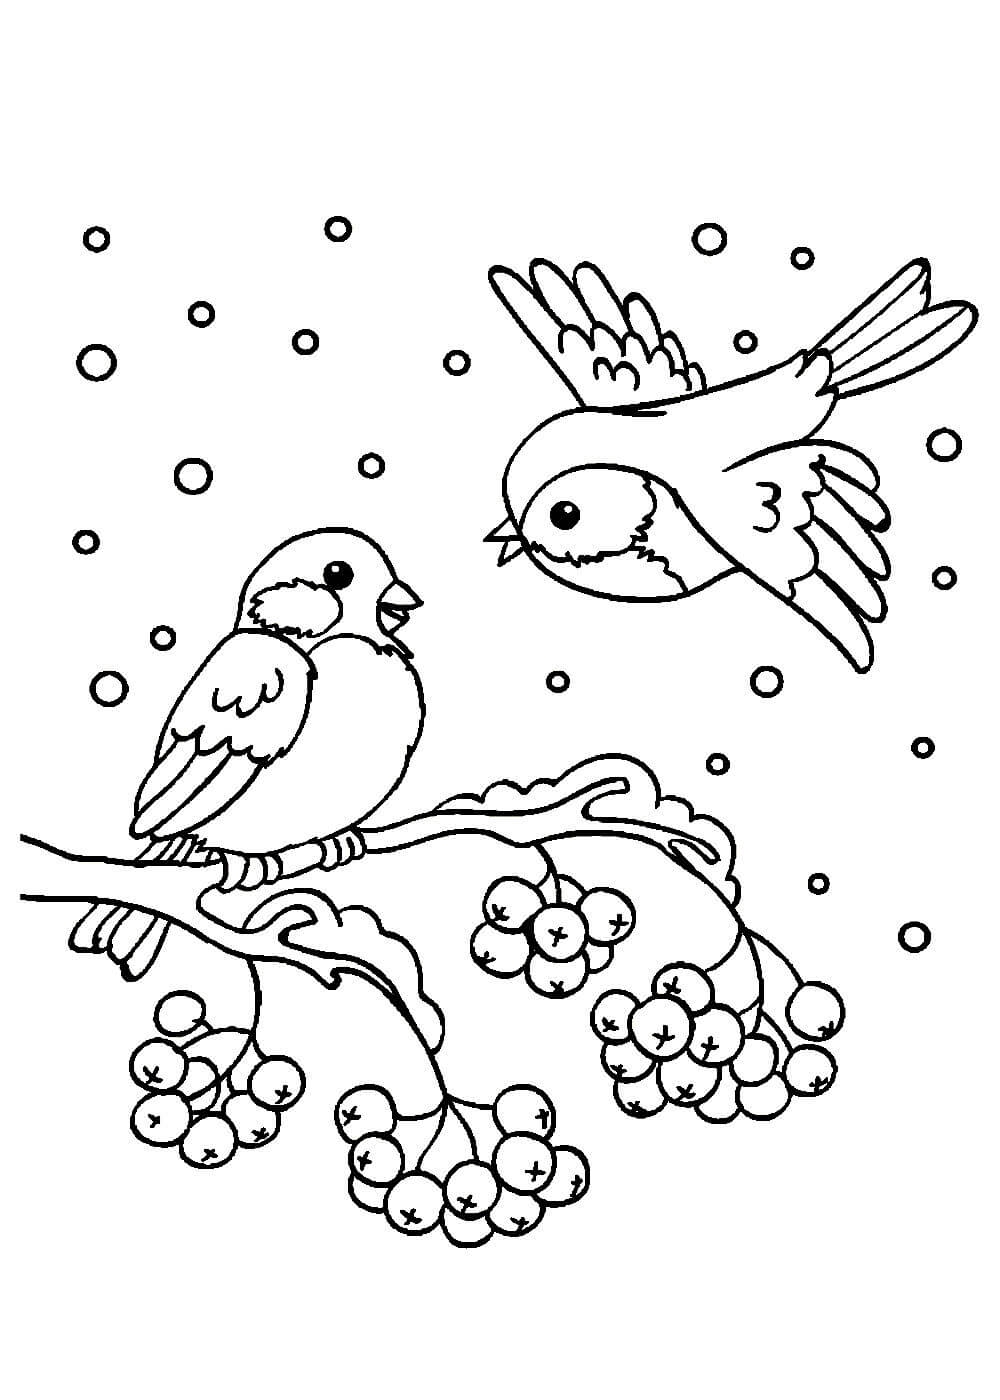 Помощь птицам зимой: решаем задачу и развиваем ответственность